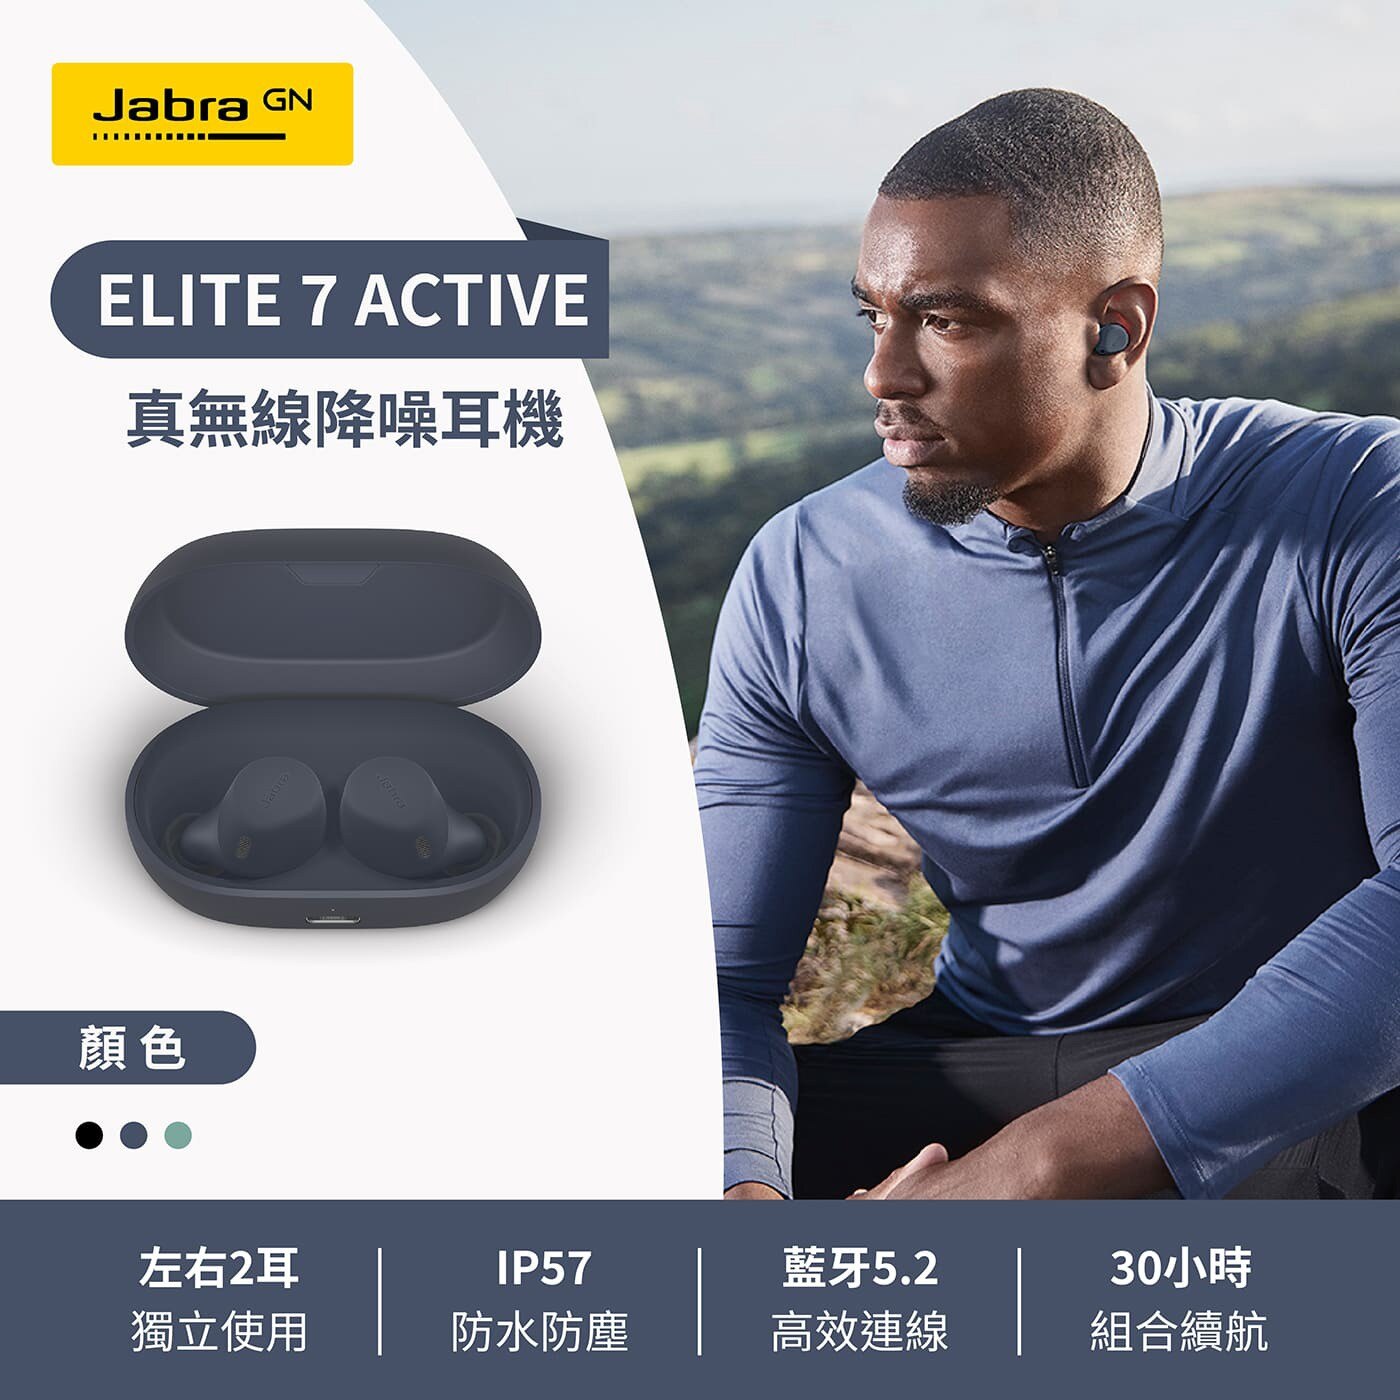 Jabra Elite 7 Active ANC降噪真無線藍牙耳機，運動防滑科技材質，IP57防水防塵保護，長達8小時的聆聽時間，搭配充電盒續航力可達30小時。